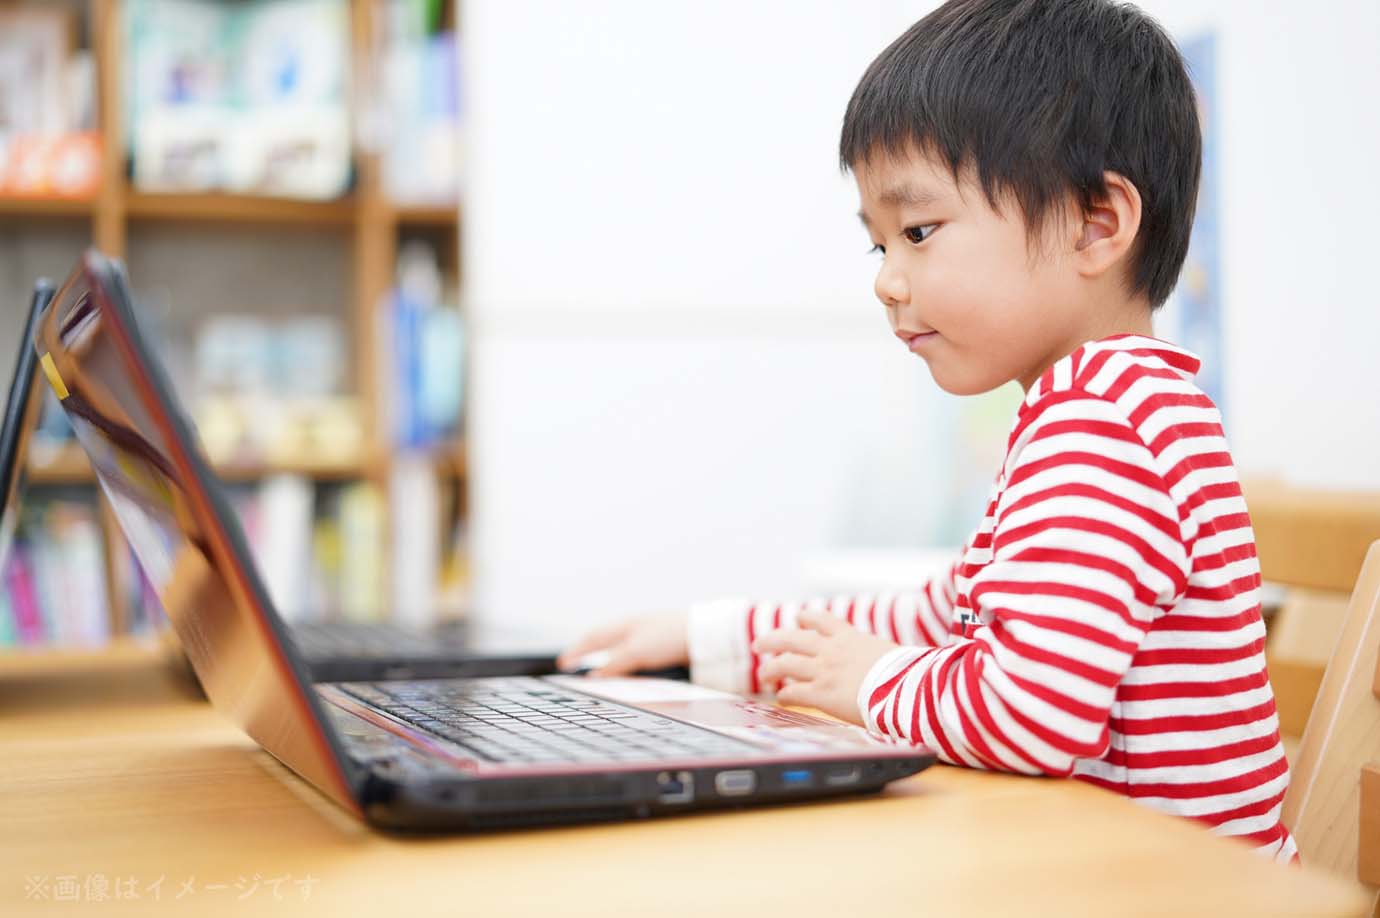 【話題】西村博之さんが128台のパソコン配布 / 欲しい児童養護施設の中の人は申し込みフォームからひろゆきさんに連絡を